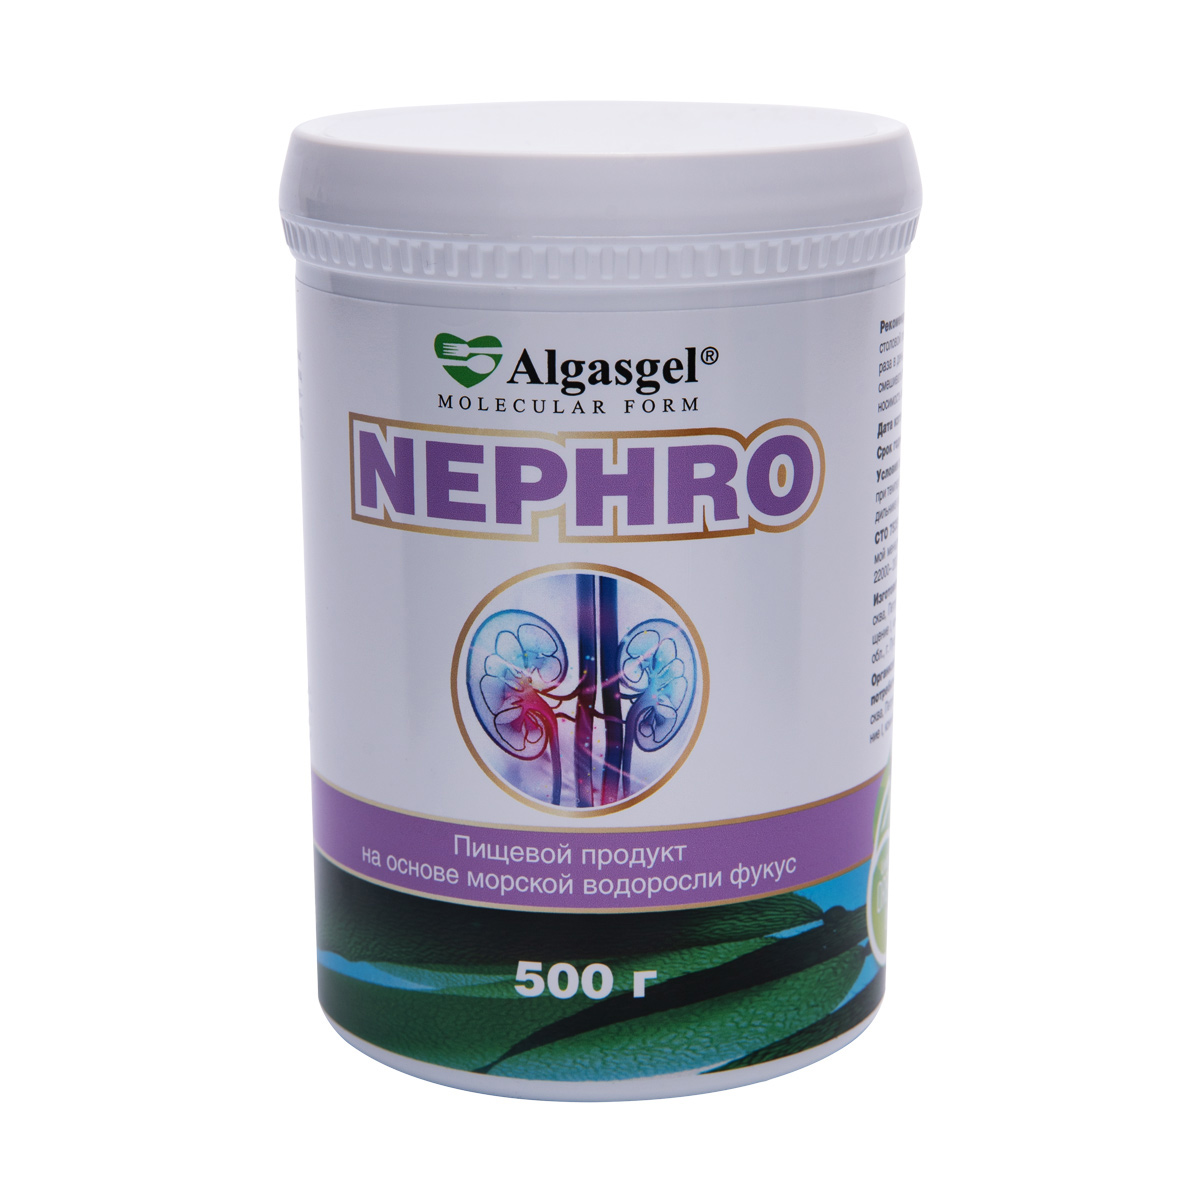 пищевой продукт algasgel glyco 2 шт по 500 г подарок Algasgel Nephro для комплексного оздоровления почек и мочевыделительной системы (500 г)